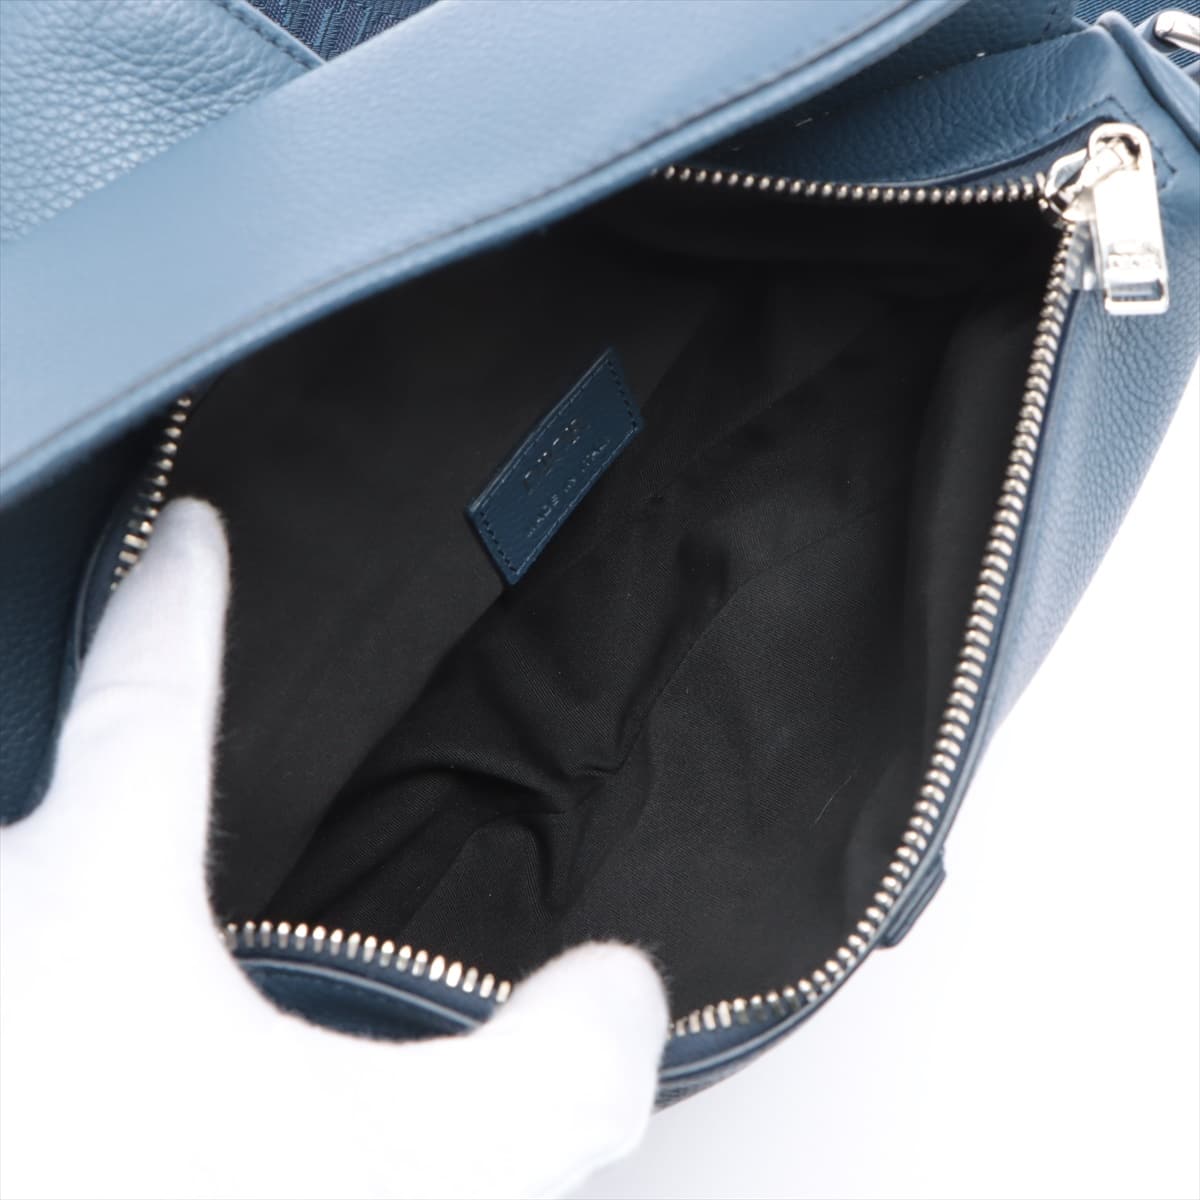 DIOR Saddle Bag Leather Sling backpack Navy blue